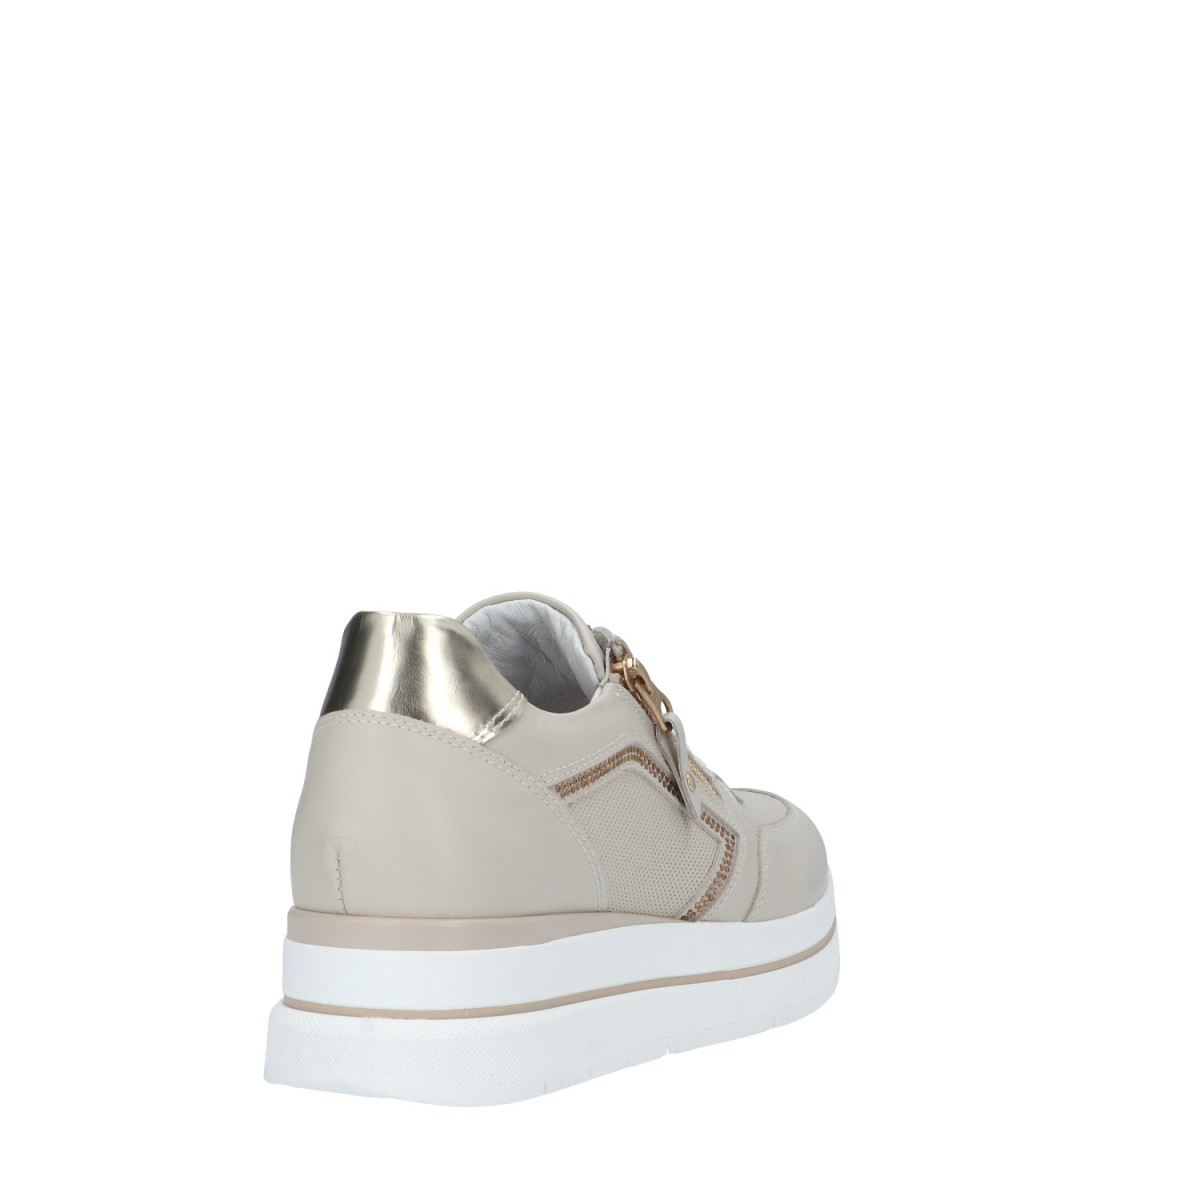 Nerogiardini Sneaker Latte Gomma E409831D